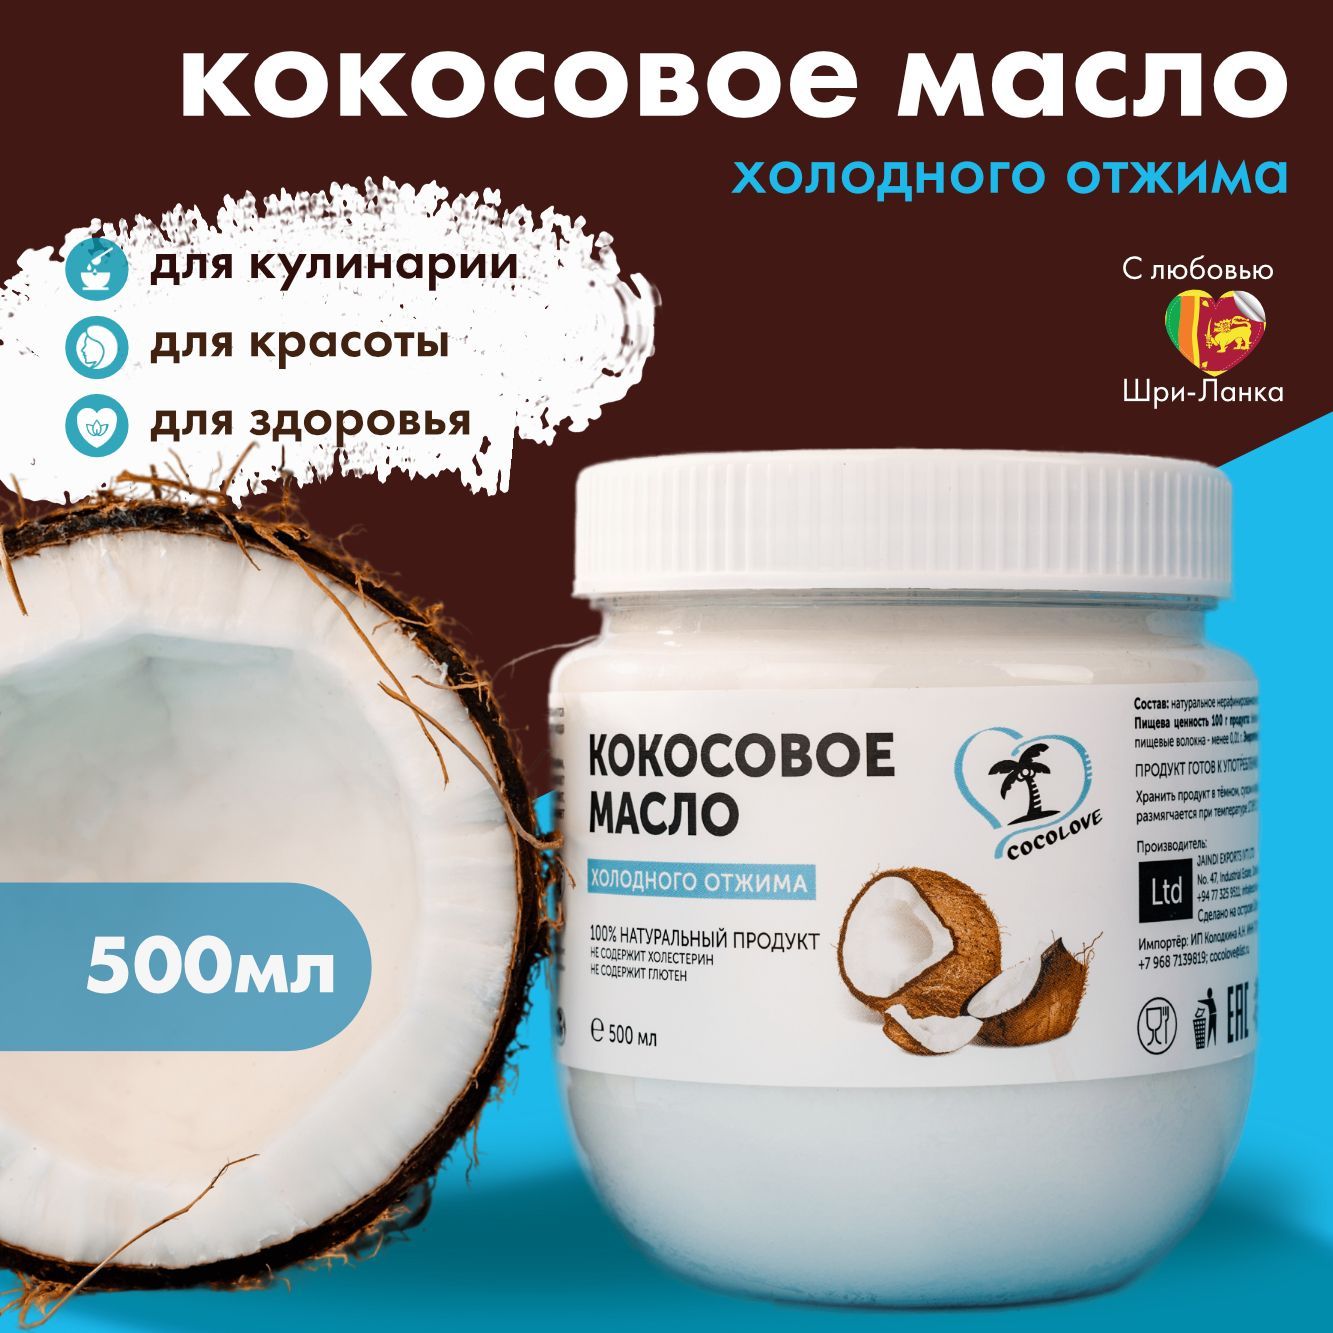 масло кокосовое можно наносить на лицо вместо крема ли | Дзен